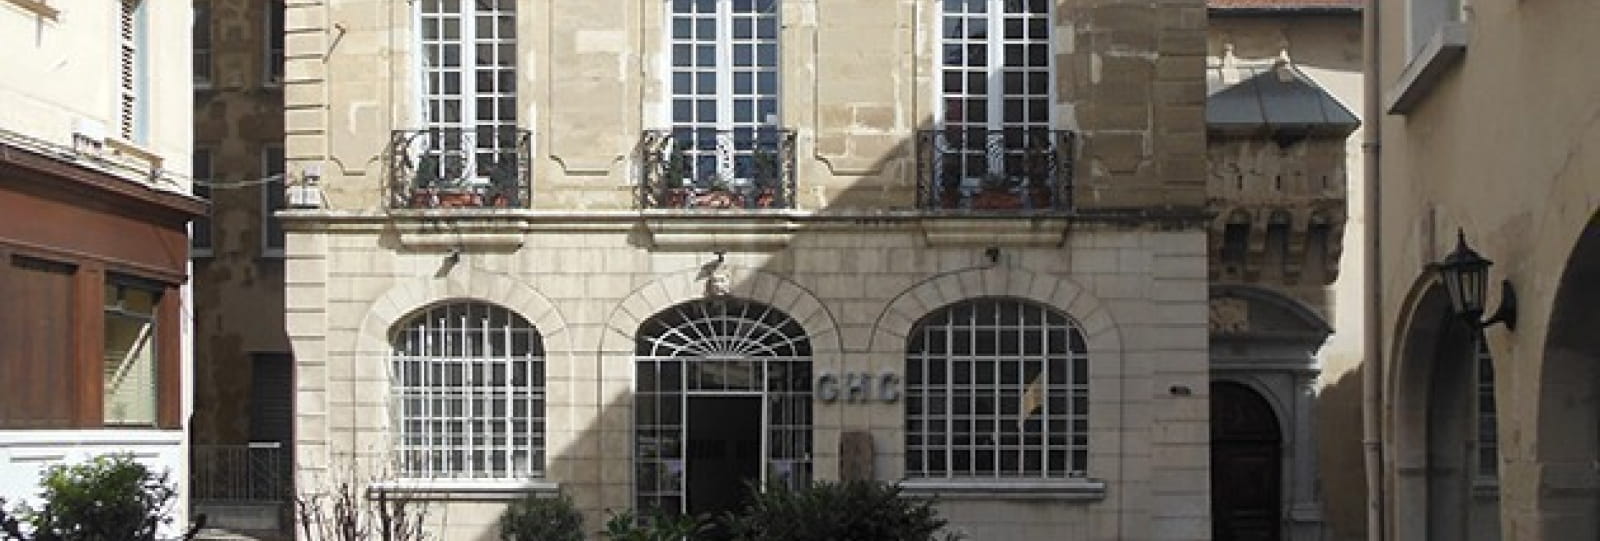 Hôtel de Clerieu